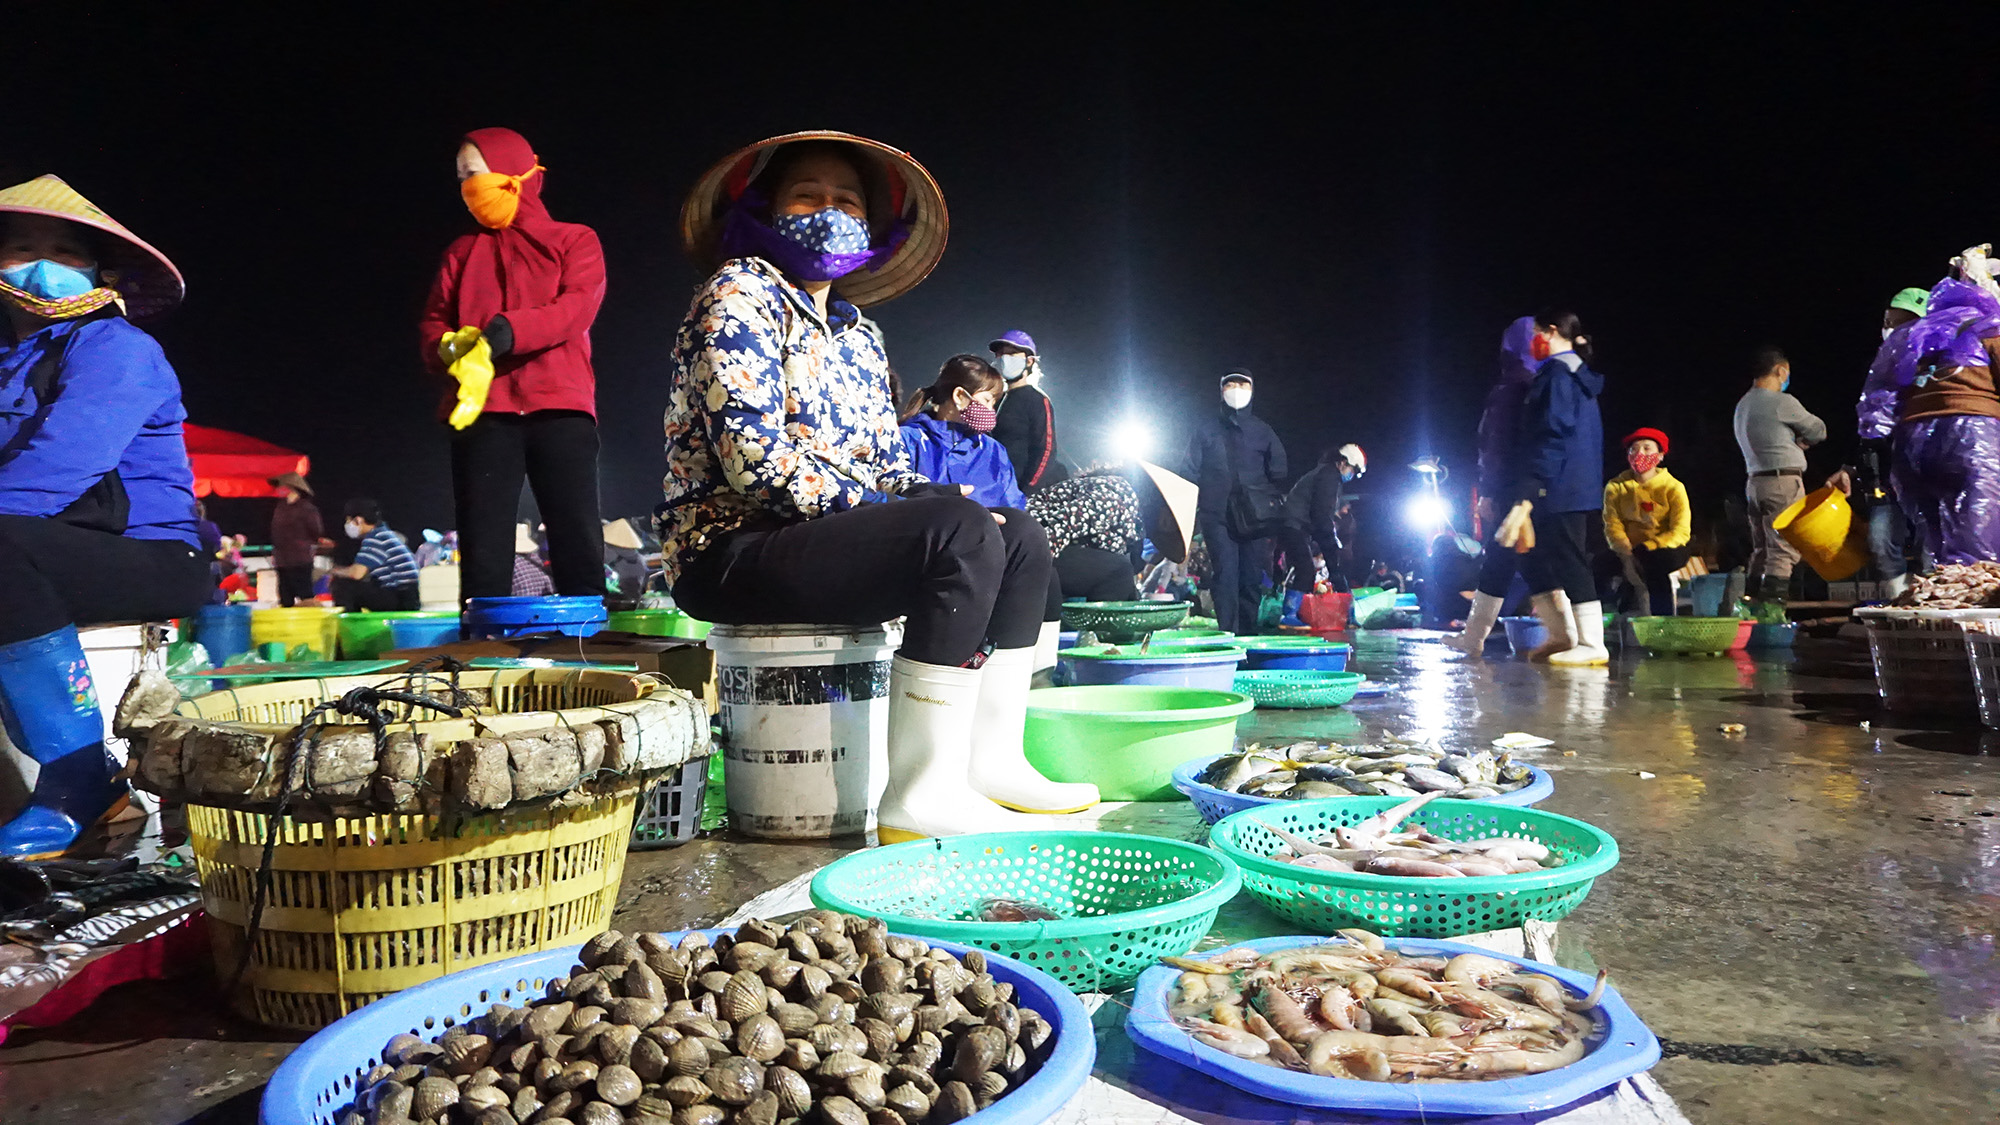 Trong chợ có rất nhiều mặt hàng thủy sản được bày bán phục vụ đủ nhu cầu của nhân dân trong thời gian cách ly toàn xã hội.